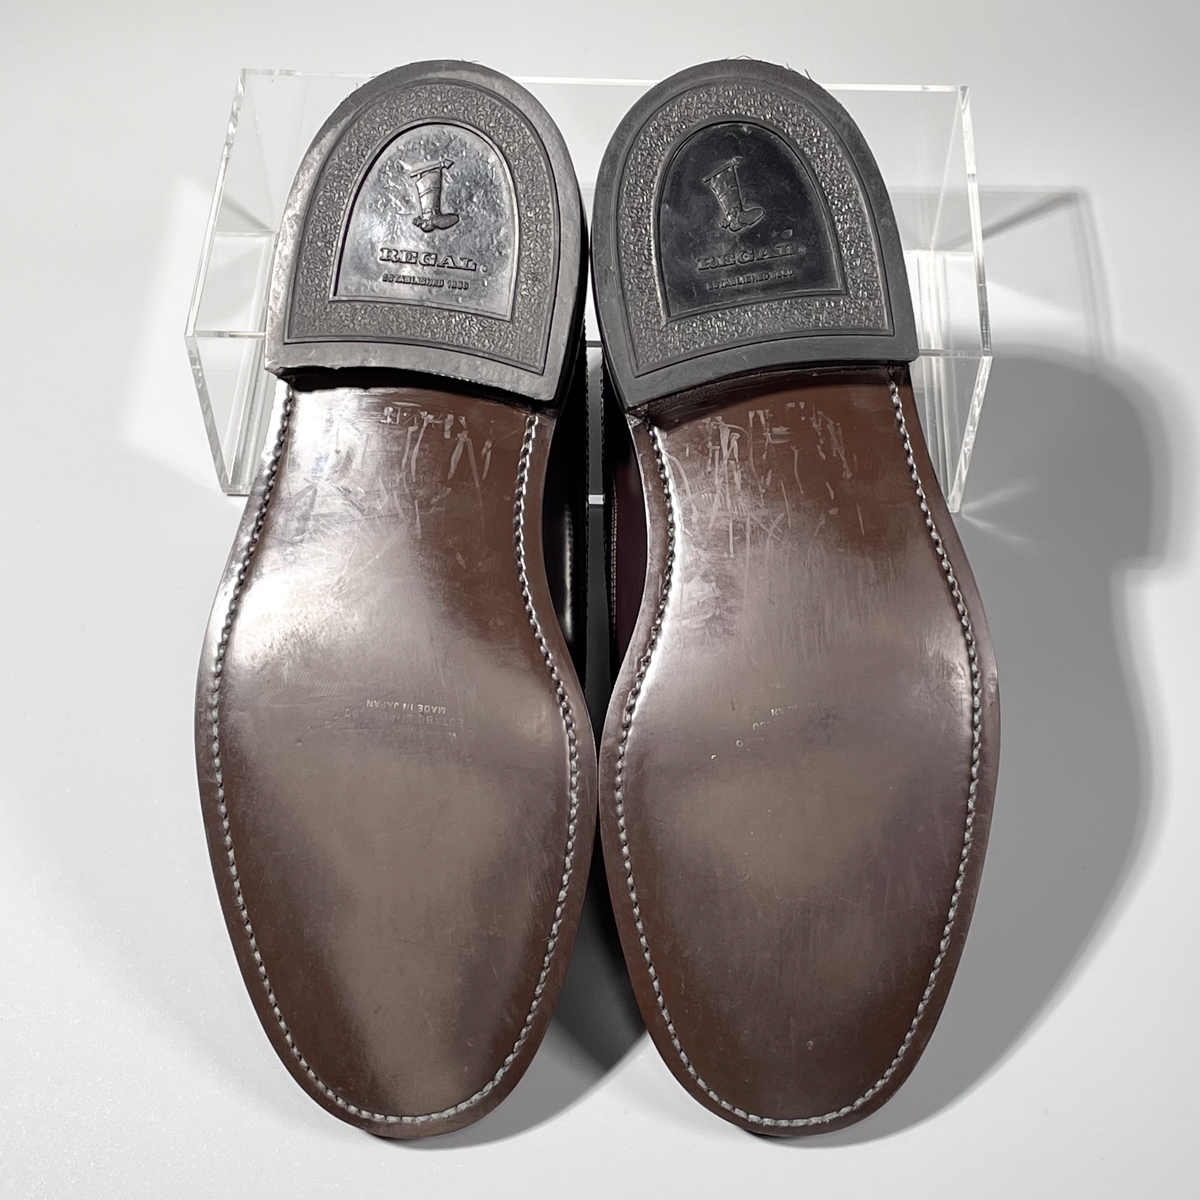 即決 REGAL リーガル ウイングチップ フルブローグ ブラウン 茶色 メンズ 本革 レザー 革靴 24.5cm ビジネスシューズ フォーマル B1594_画像7